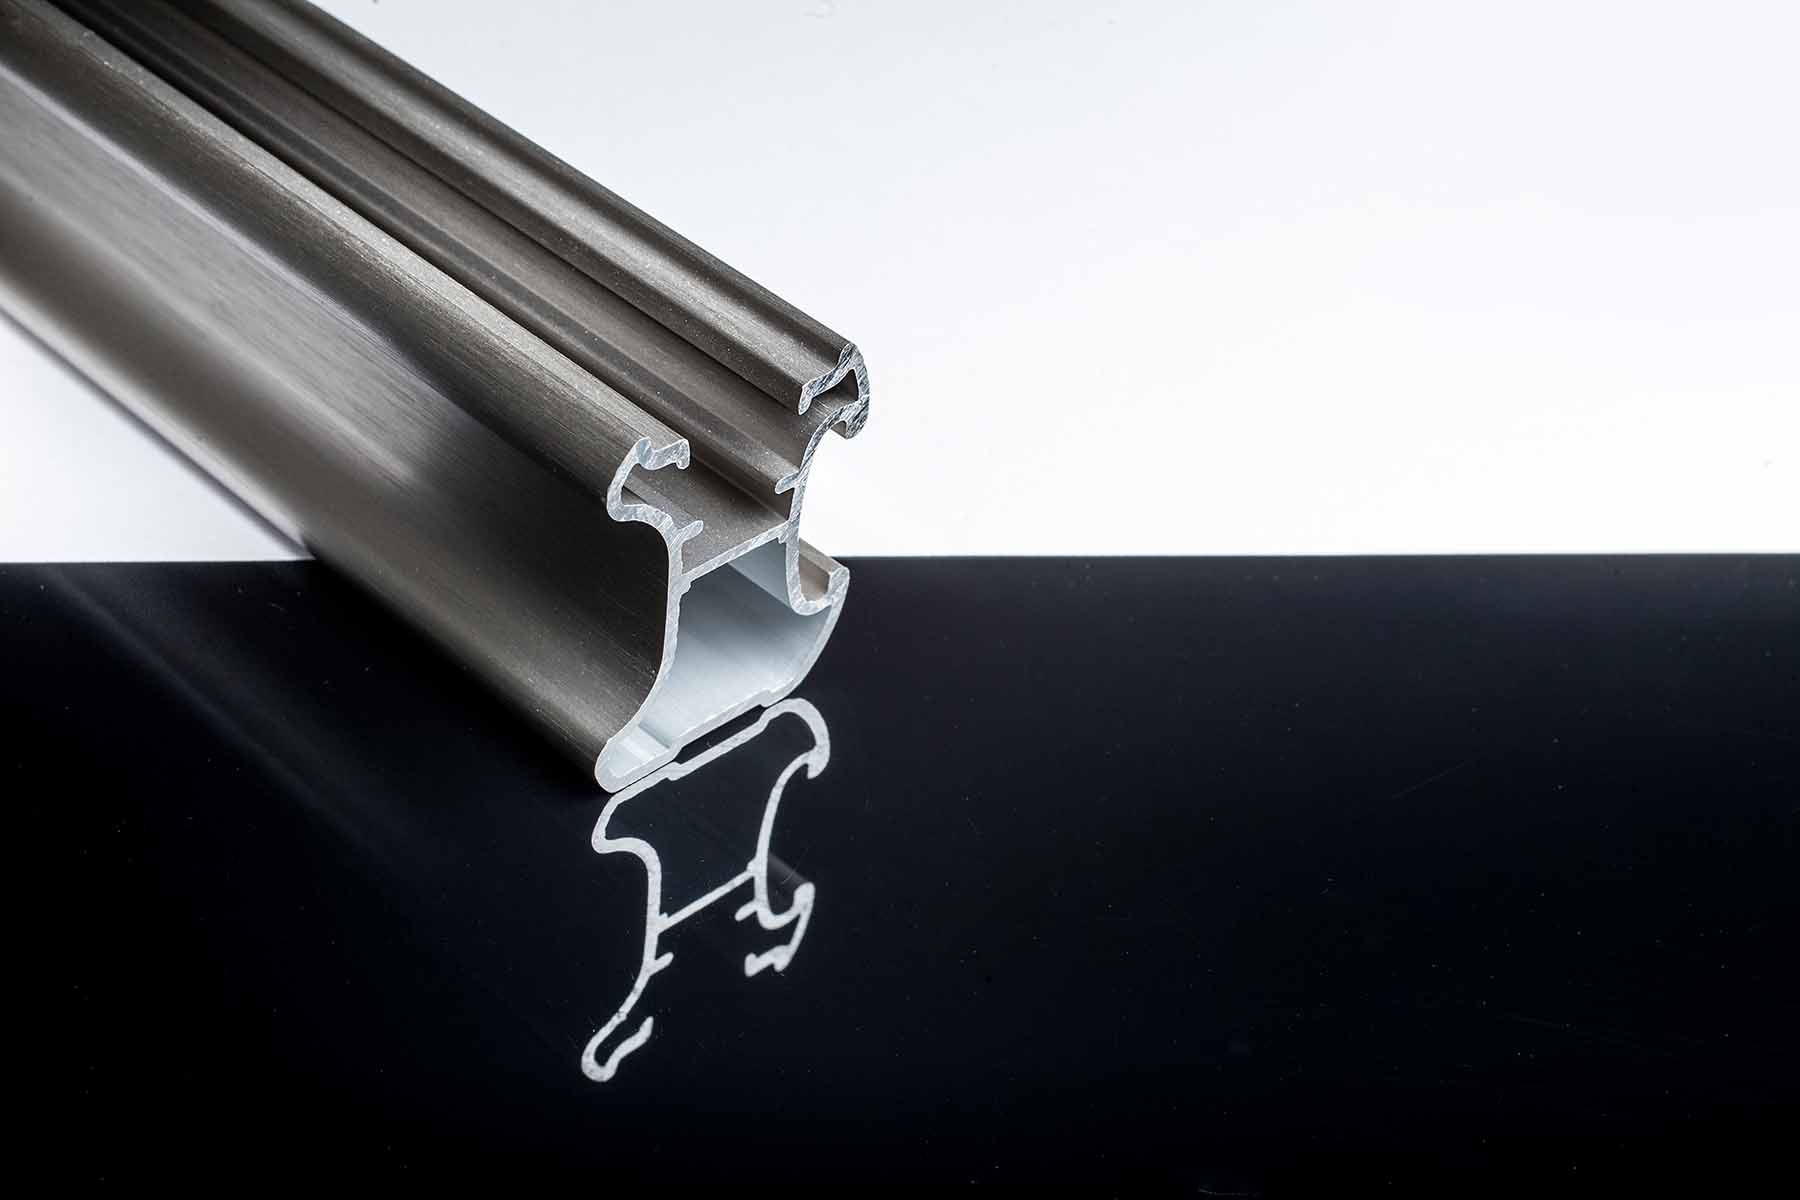 Roest punch Niet genoeg Aluminium profielen op maat? Partnership bij Amari Metals